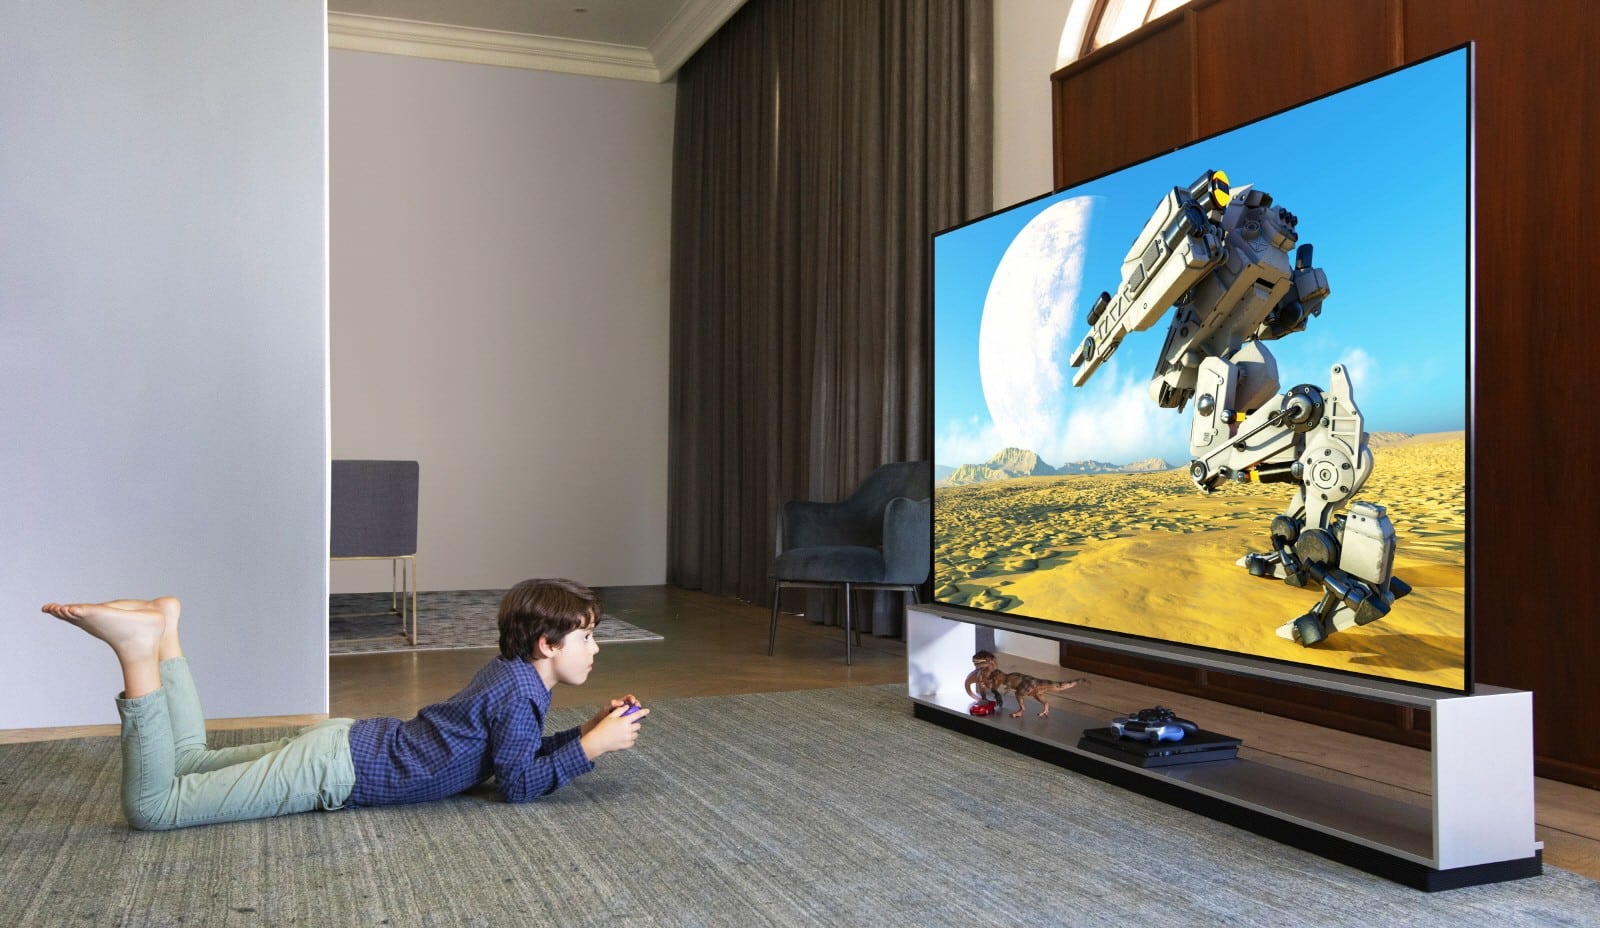 لماذا تعد أجهزة التلفزيون بتقنية OLED هي الأفضل للألعاب؟